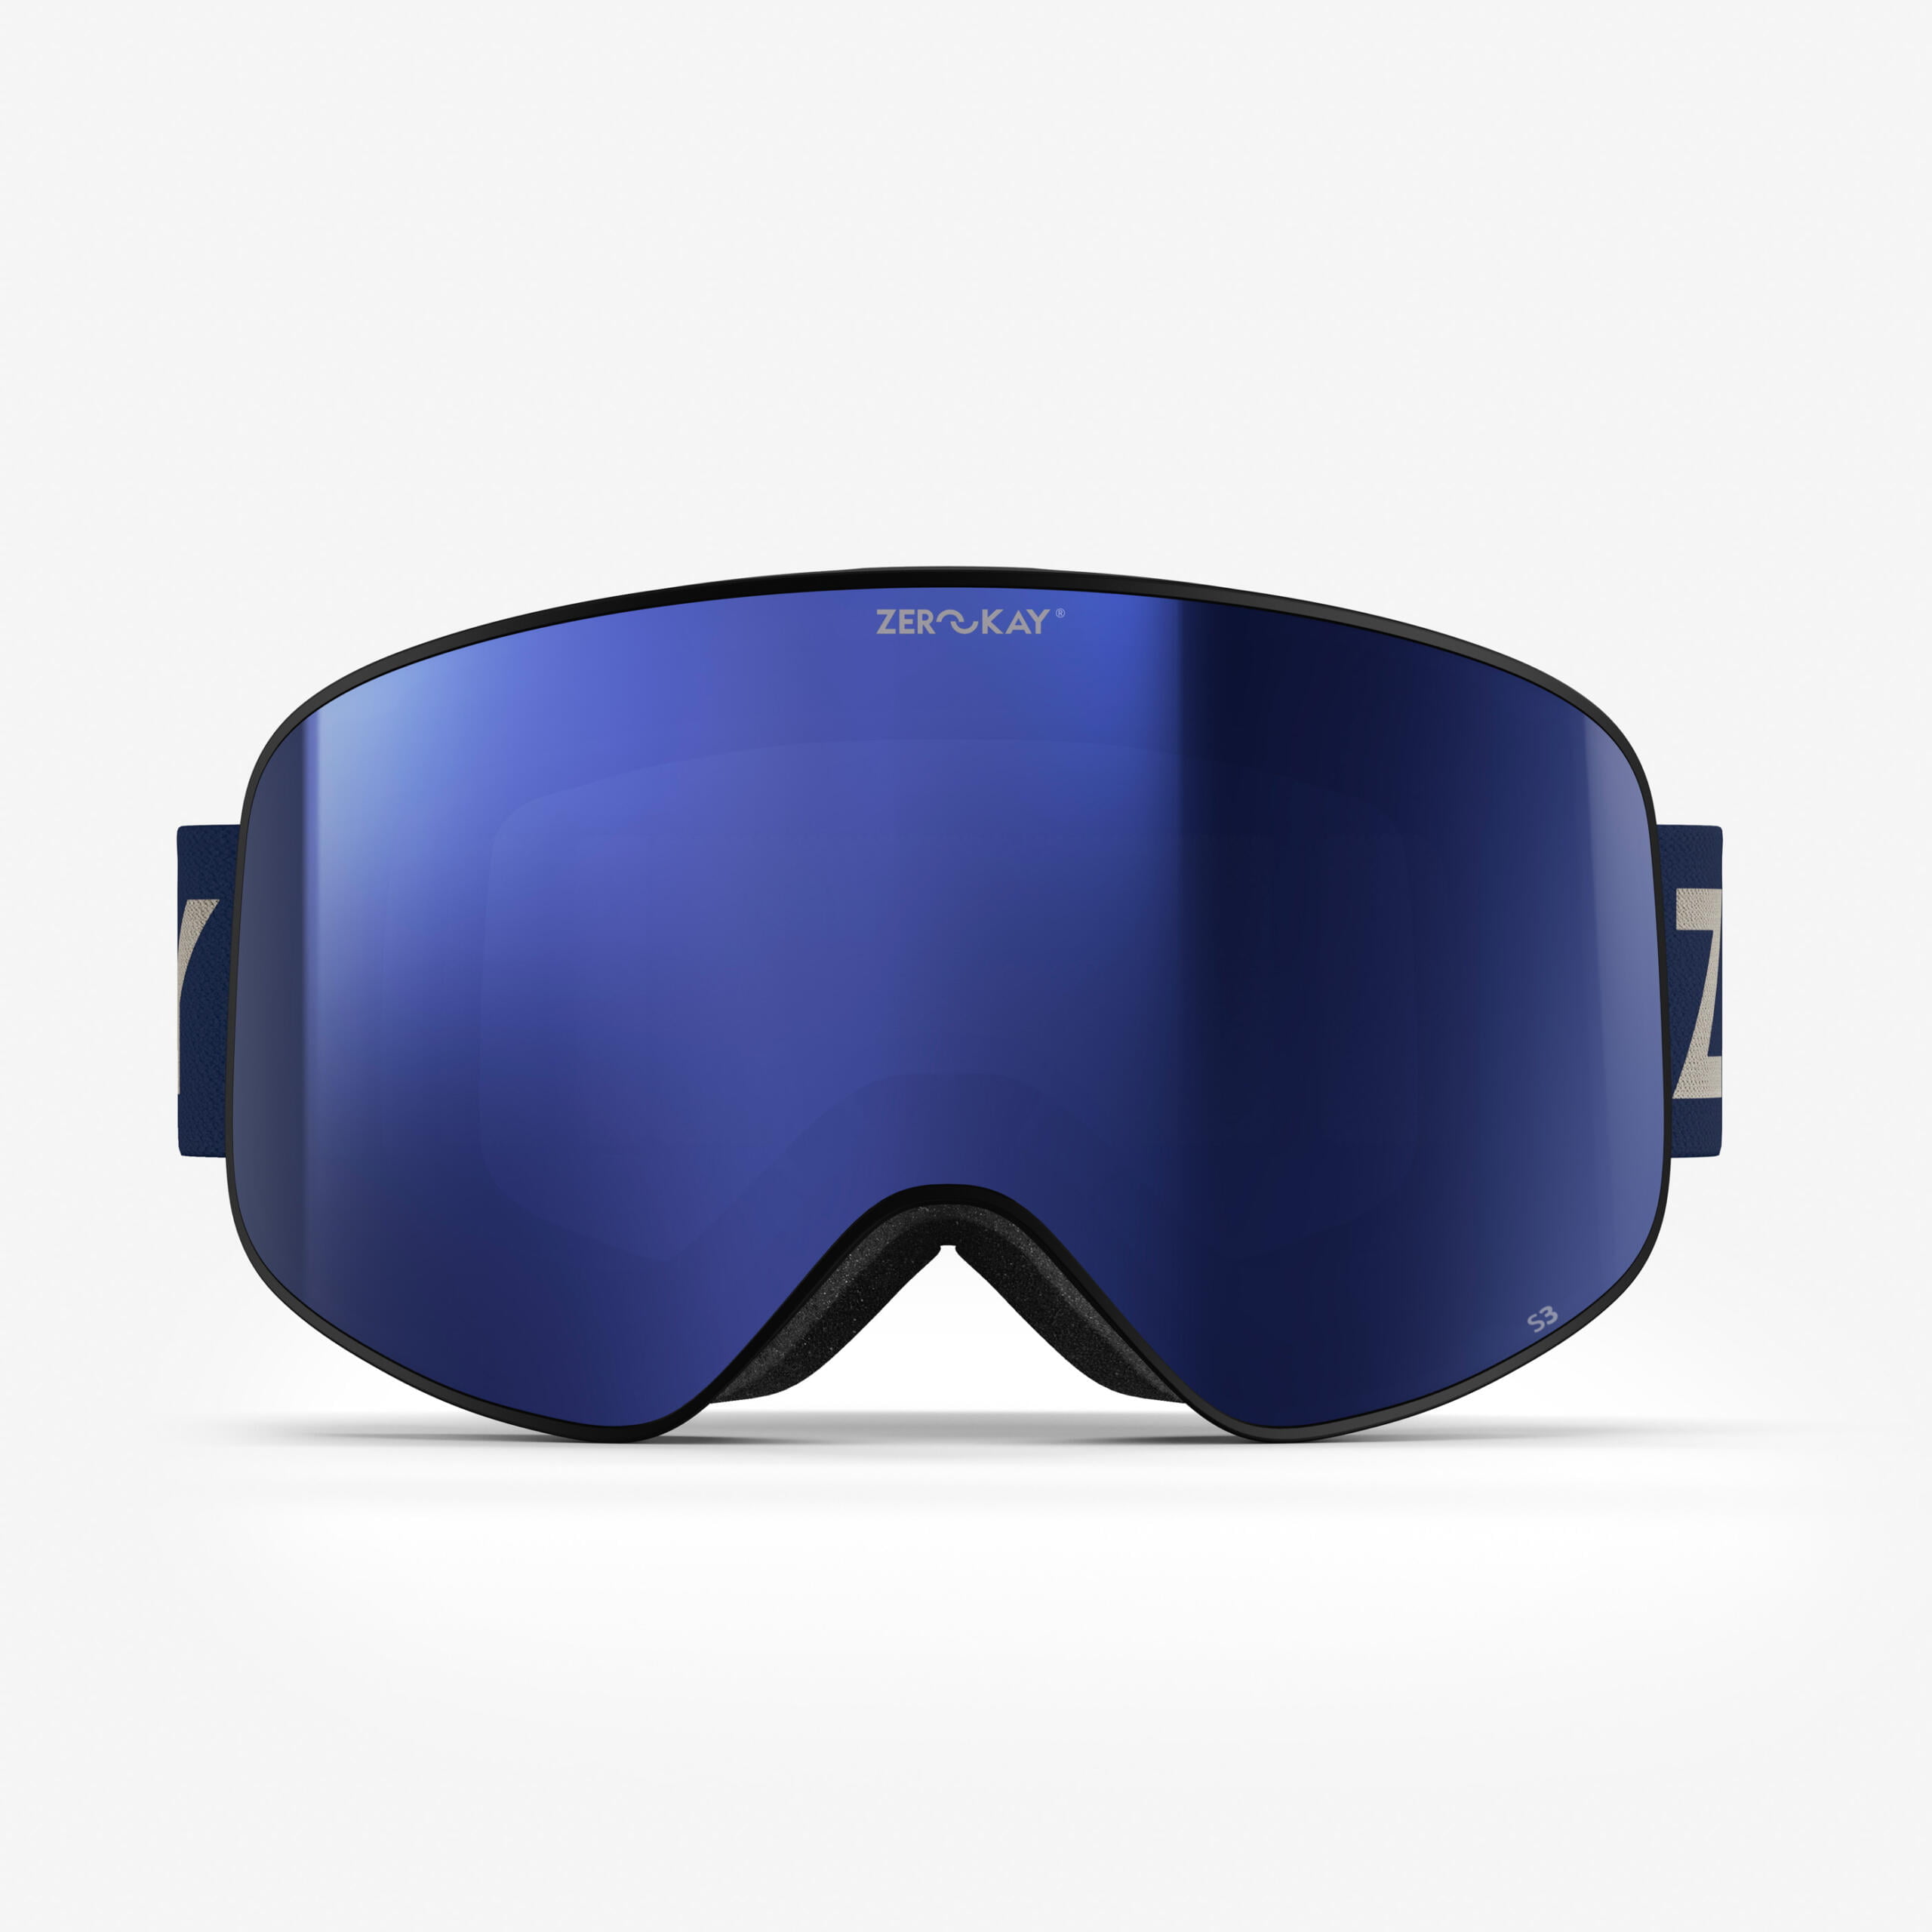 Contrast Skibrillen mit blauem Glas und blauem Band, für sonnige Tage gedacht, bieten einfache Funktionalität und Komfort.